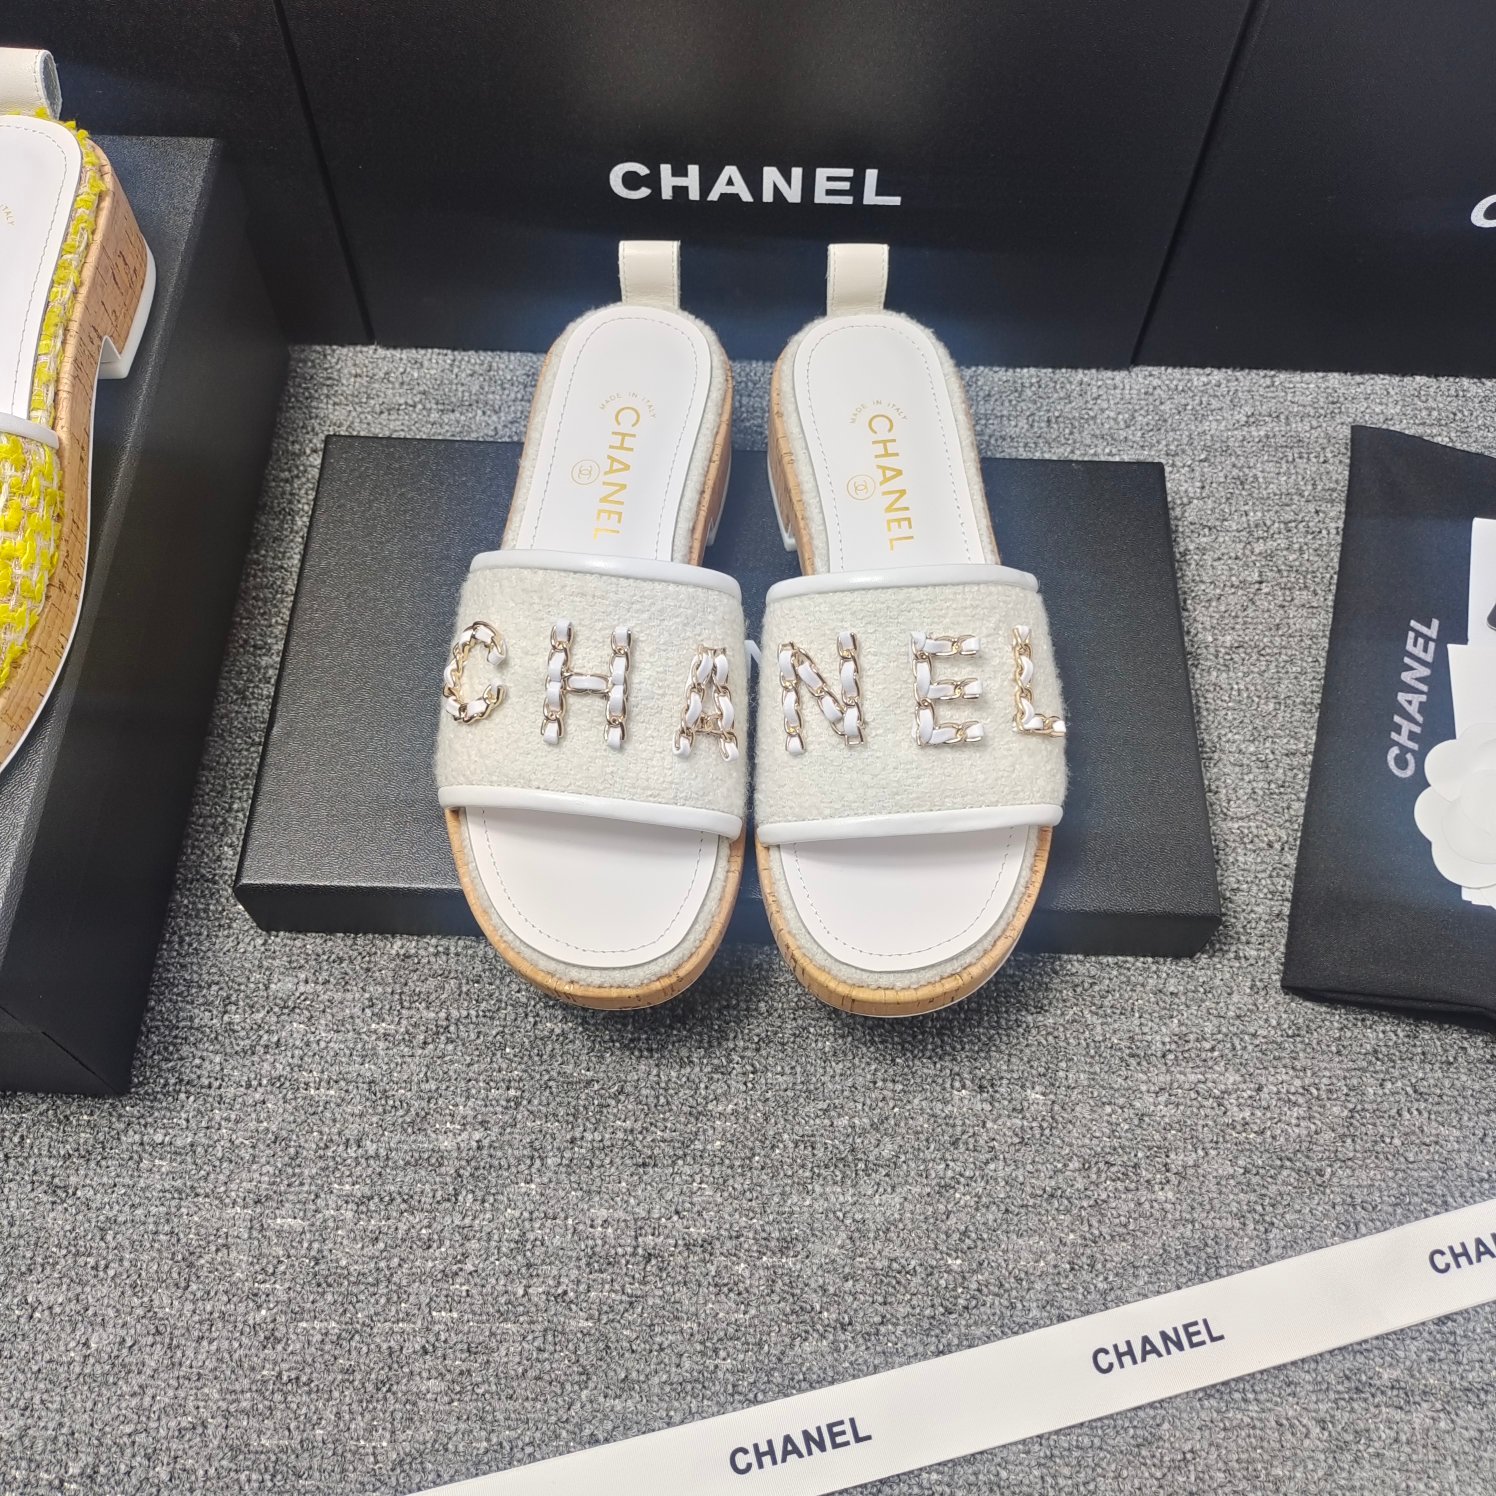 Chanel Scarpe Pantofole Cuoio genuino Pelle di pecora Collezione Primavera/Estate Catene